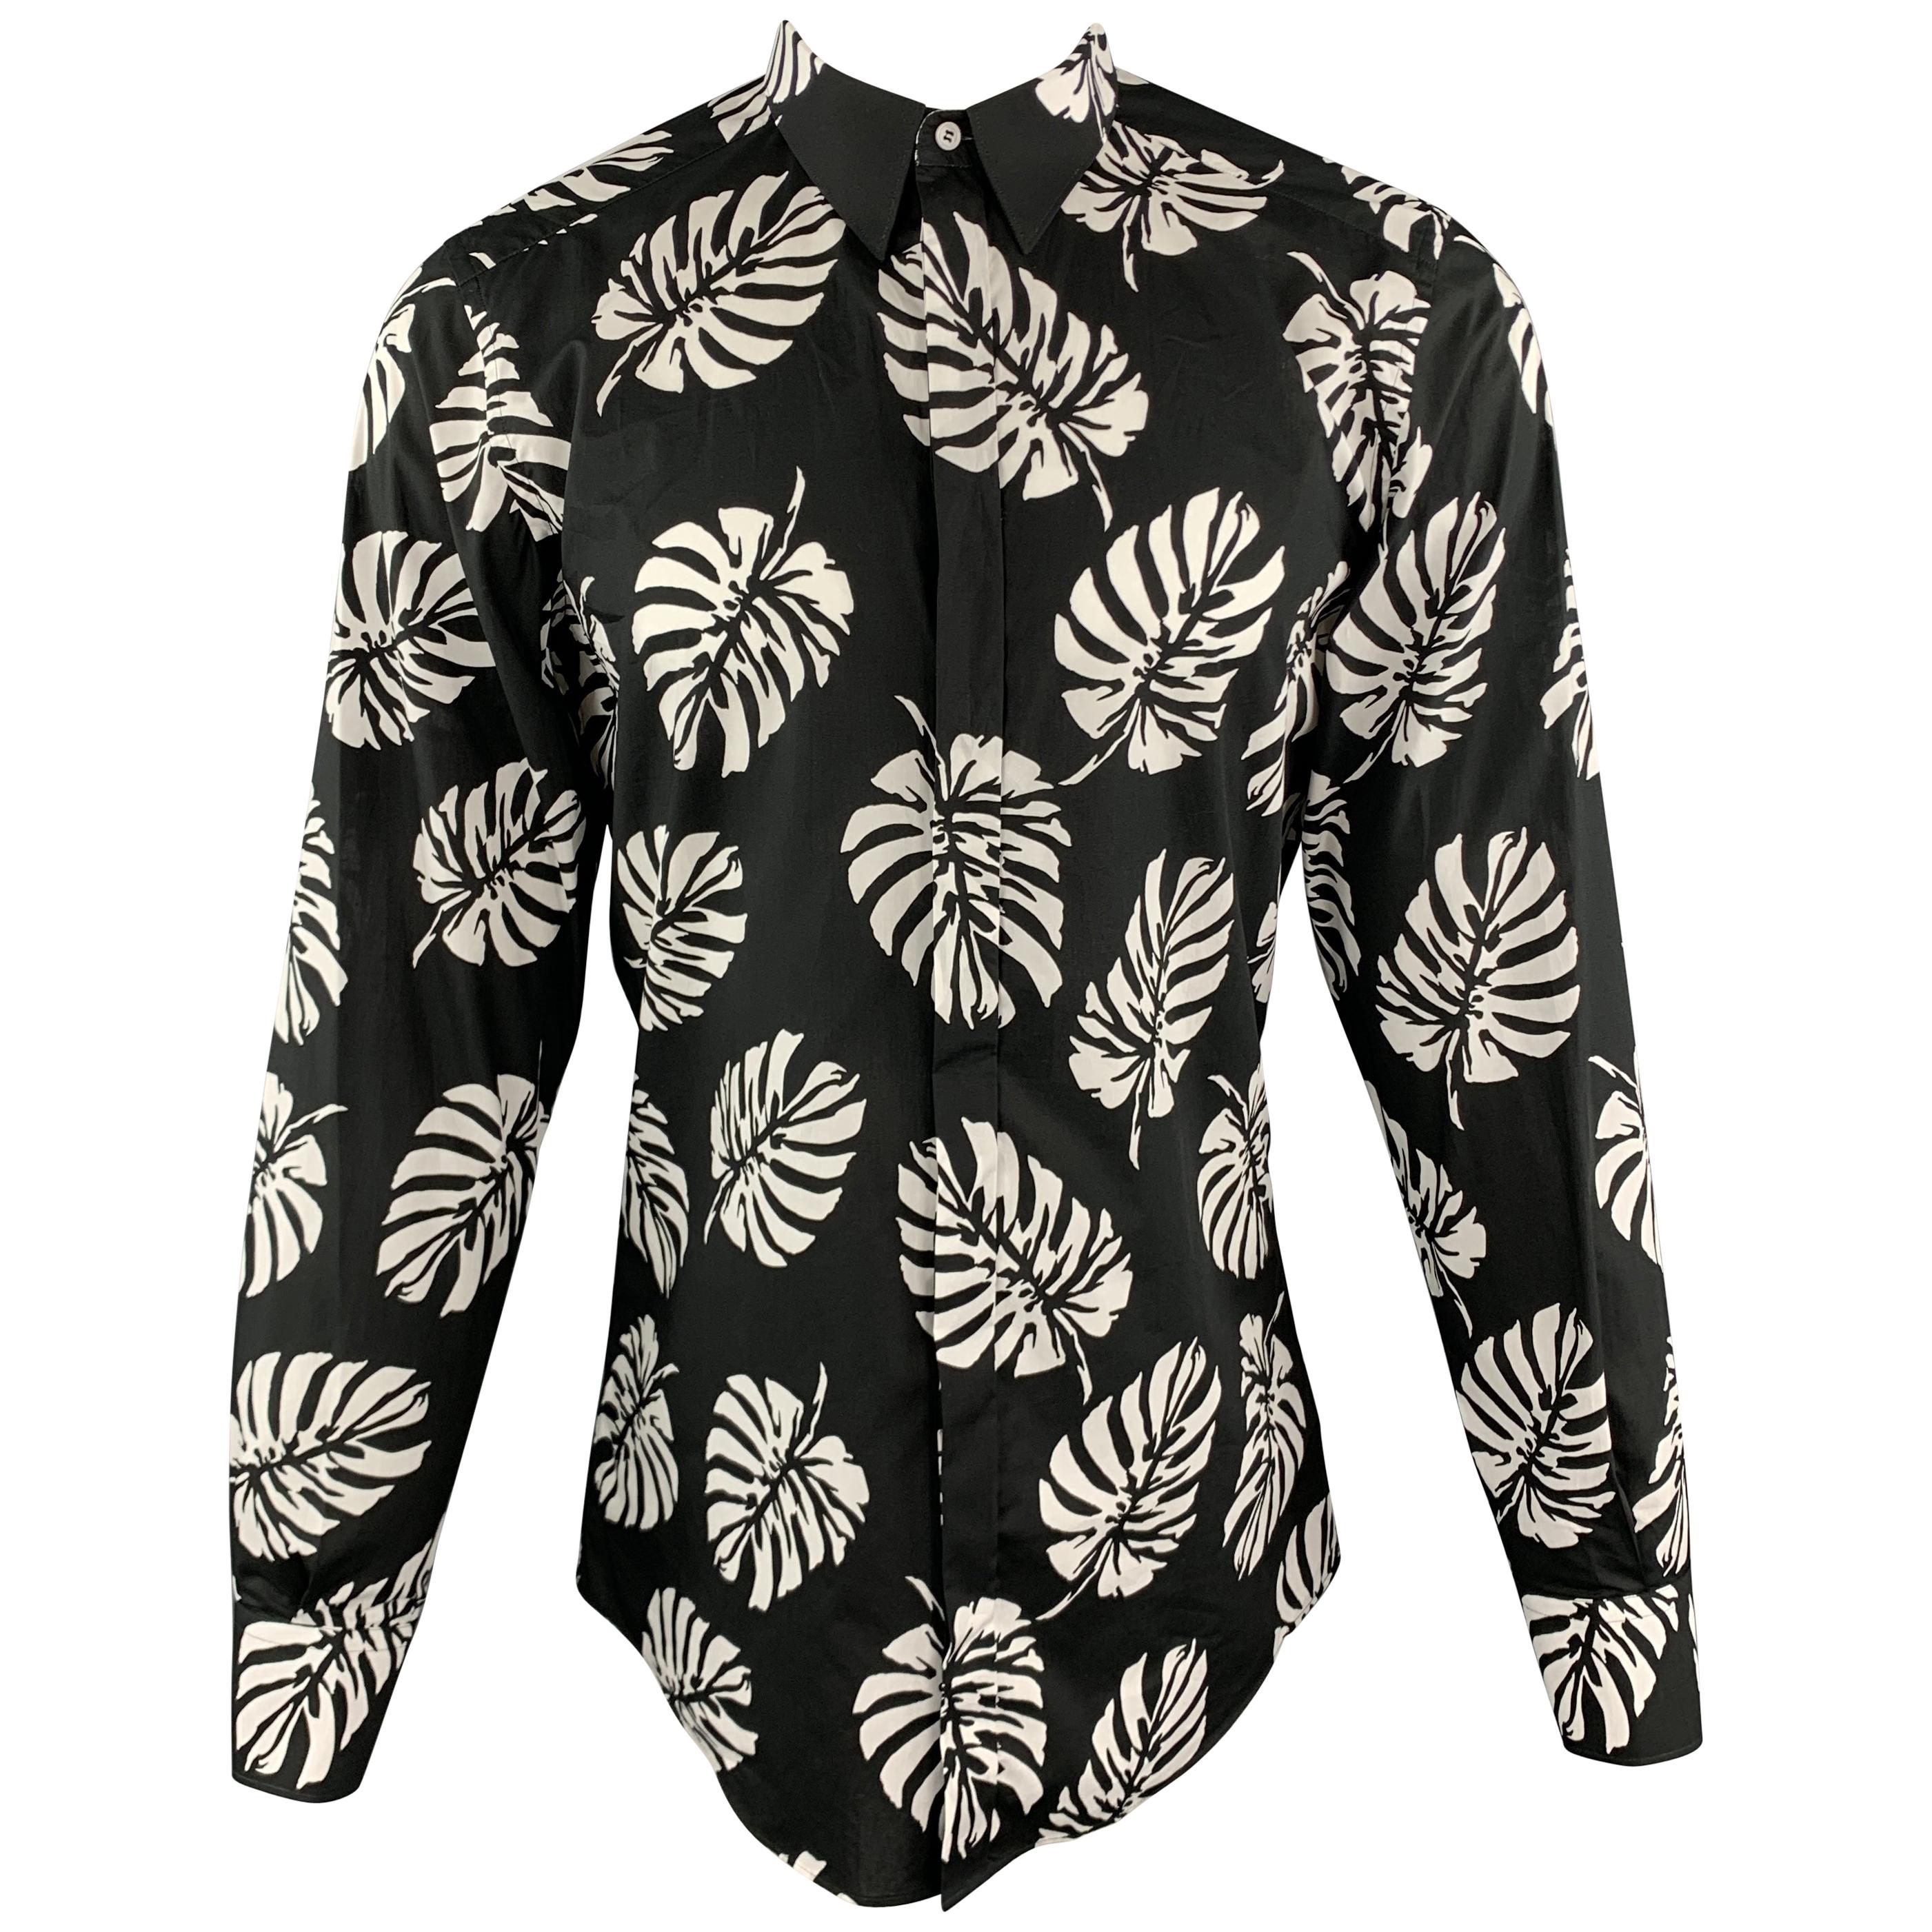 DOLCE & GABBANA Size M Black & White Palm Leaf Print Cotton Shirt